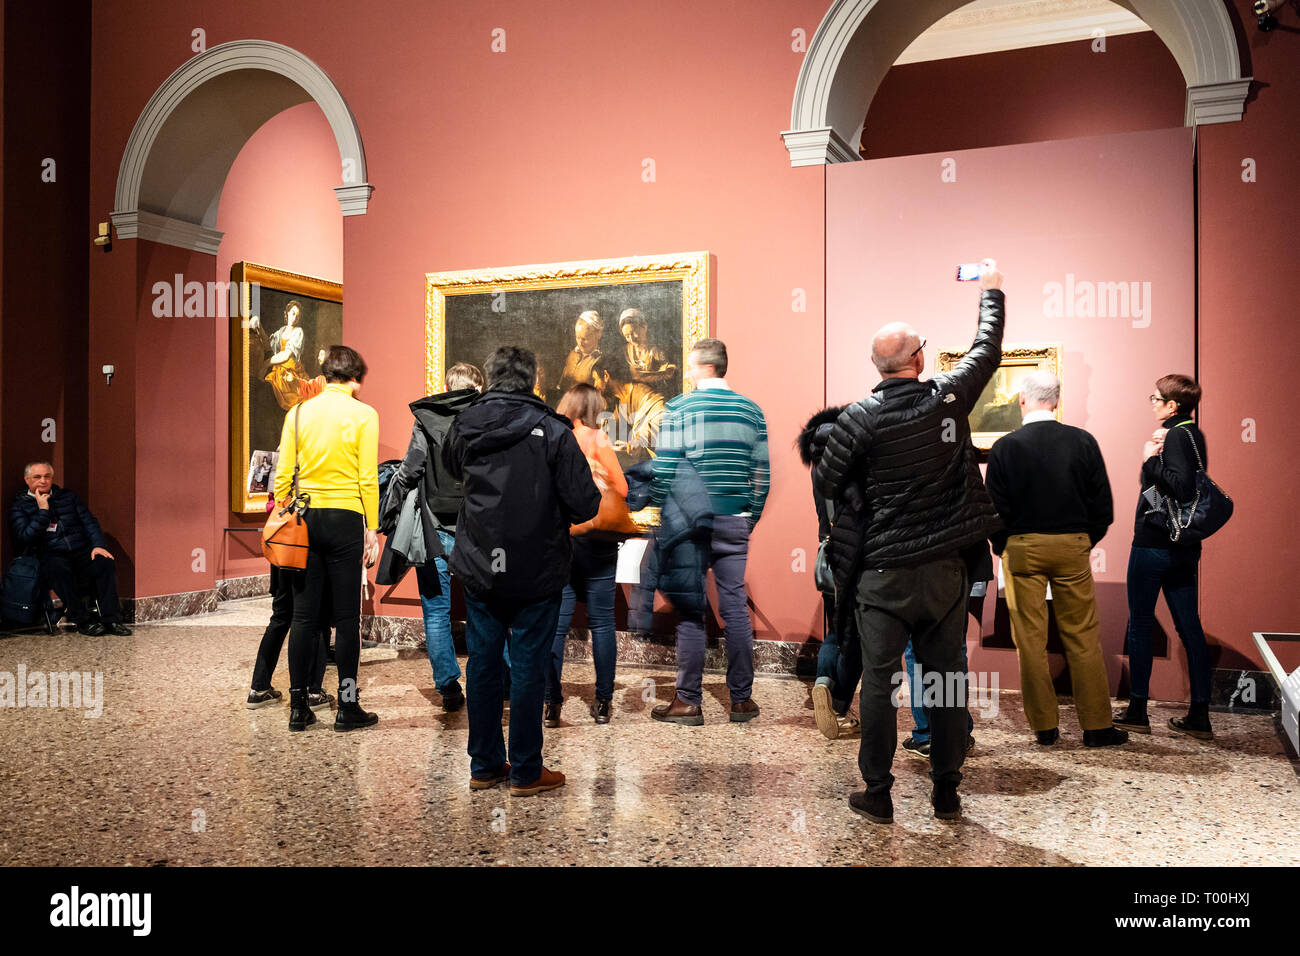 MILAN, ITALIE - 24 février 2019 : photographies touristiques photos de Pinacoteca di Brera (Pinacothèque de Brera) à Milan. La Brera est national photo gall Banque D'Images